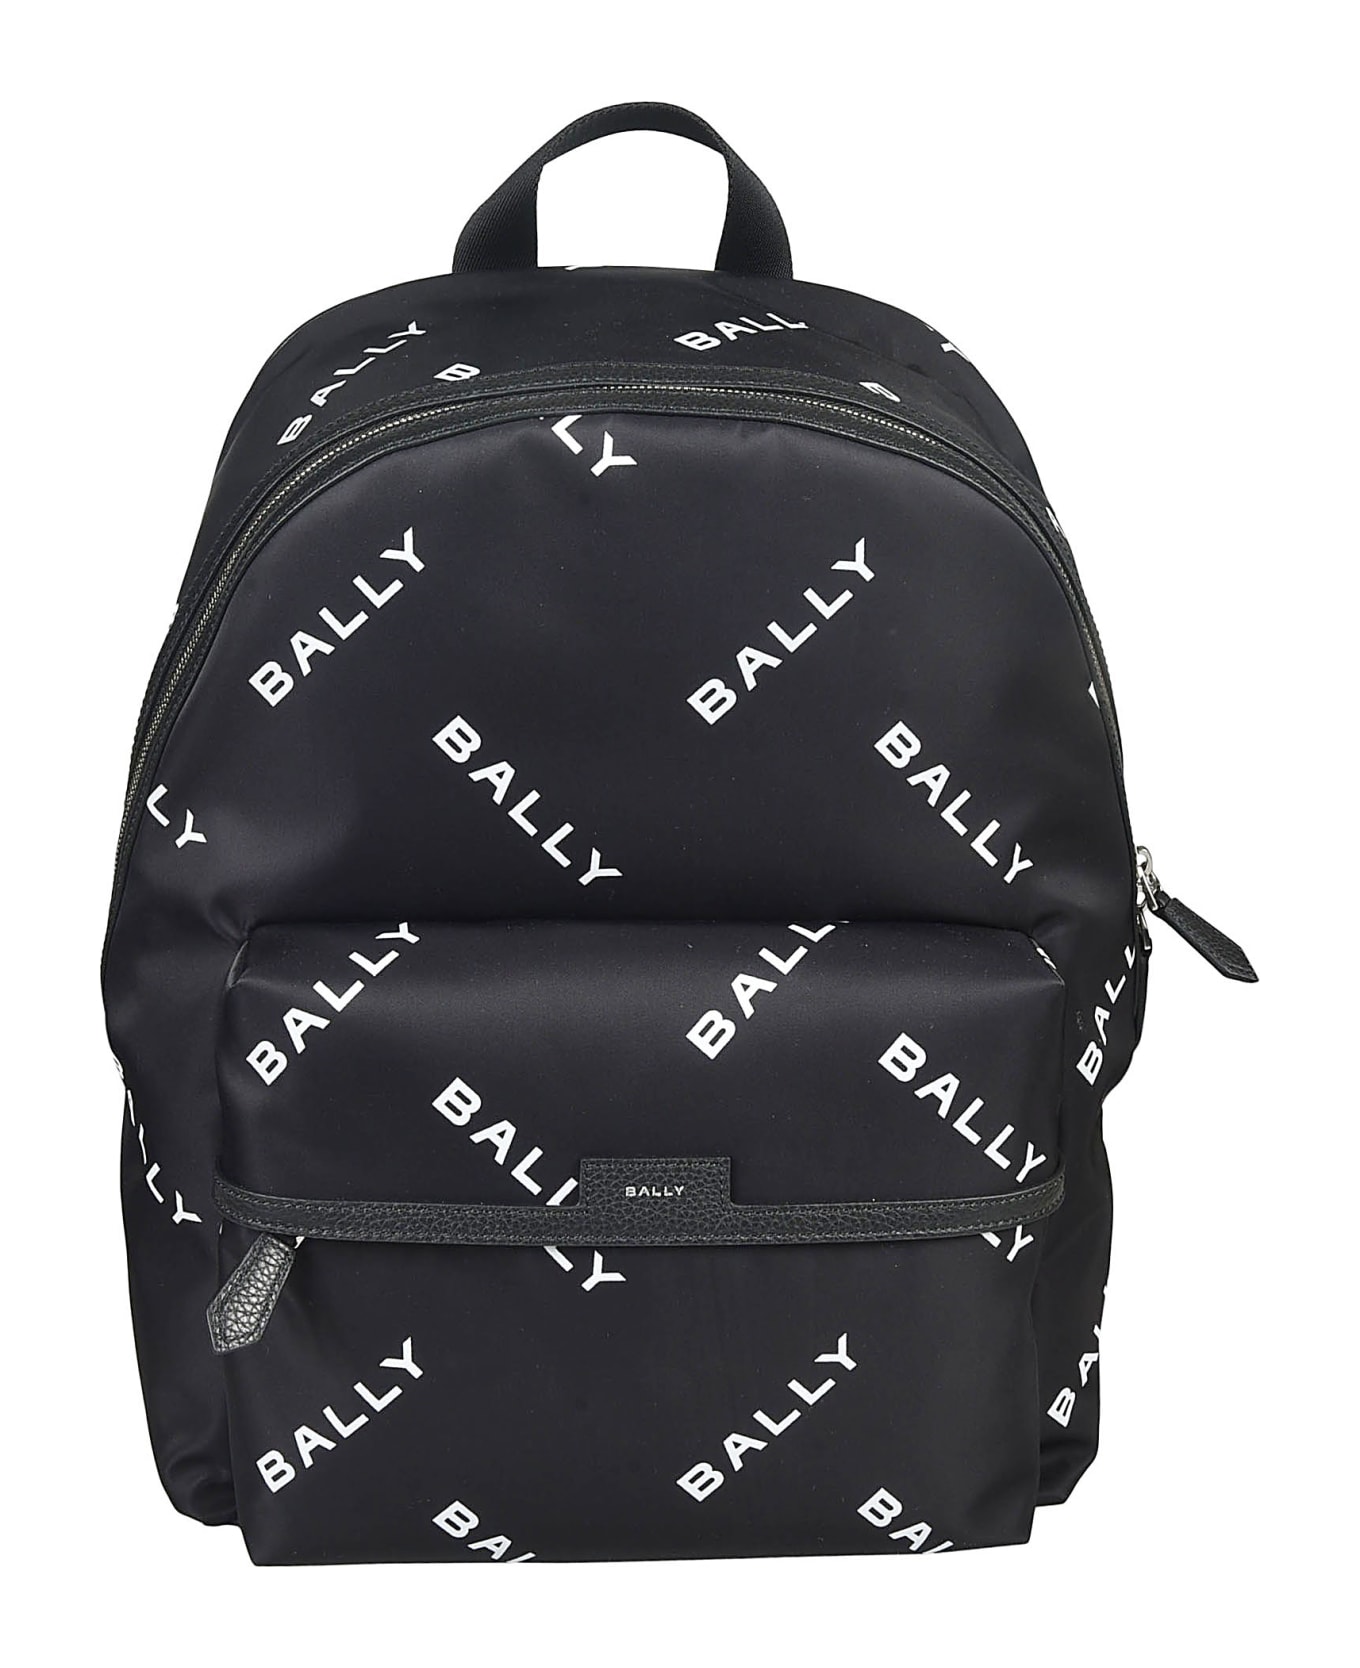 Bally Code Backpack - Black/White バックパック